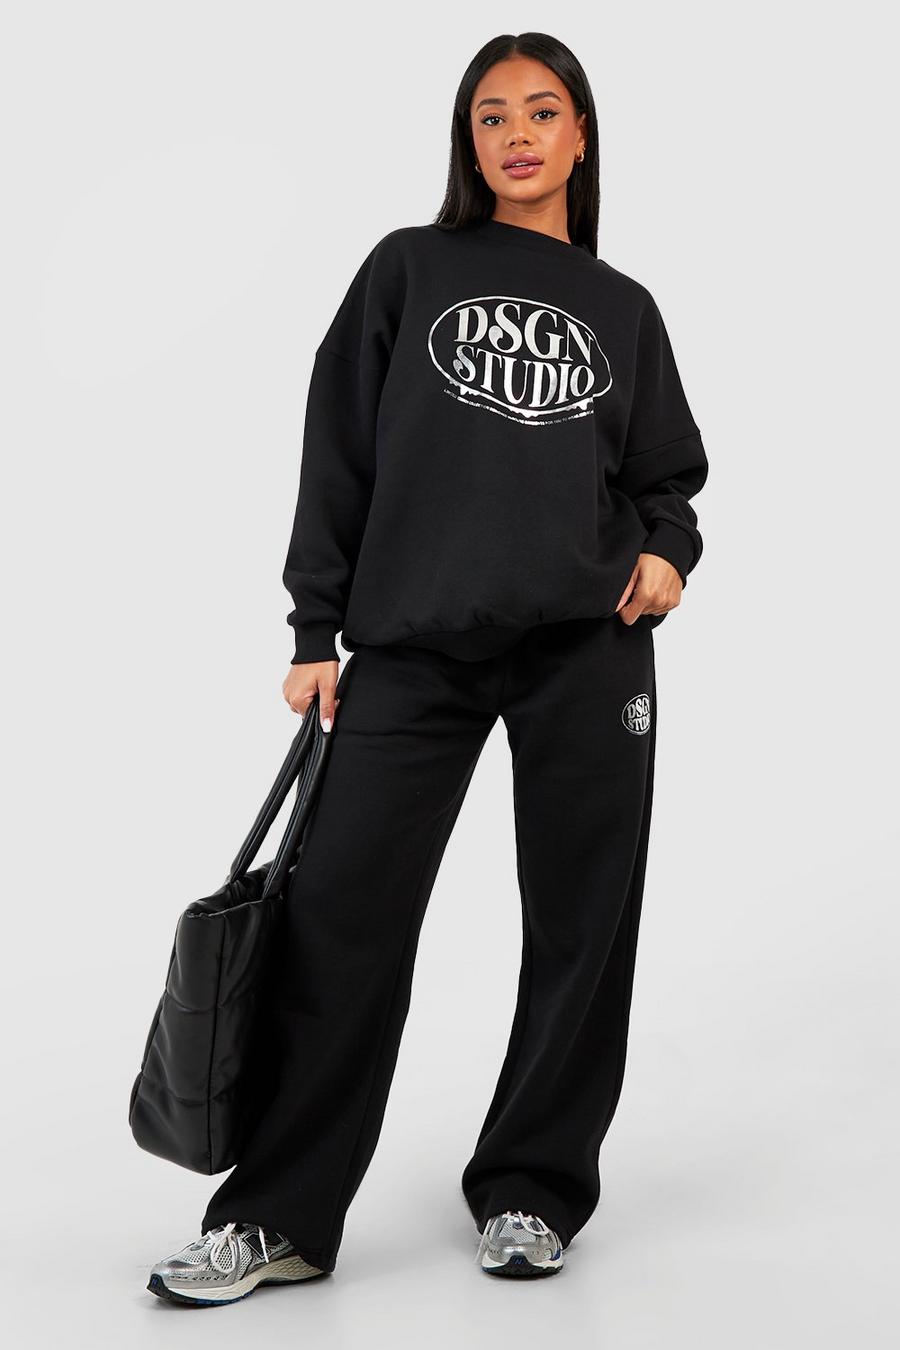 Oversize Sweatshirt mit Dsgn Studio Folien-Print, Black image number 1